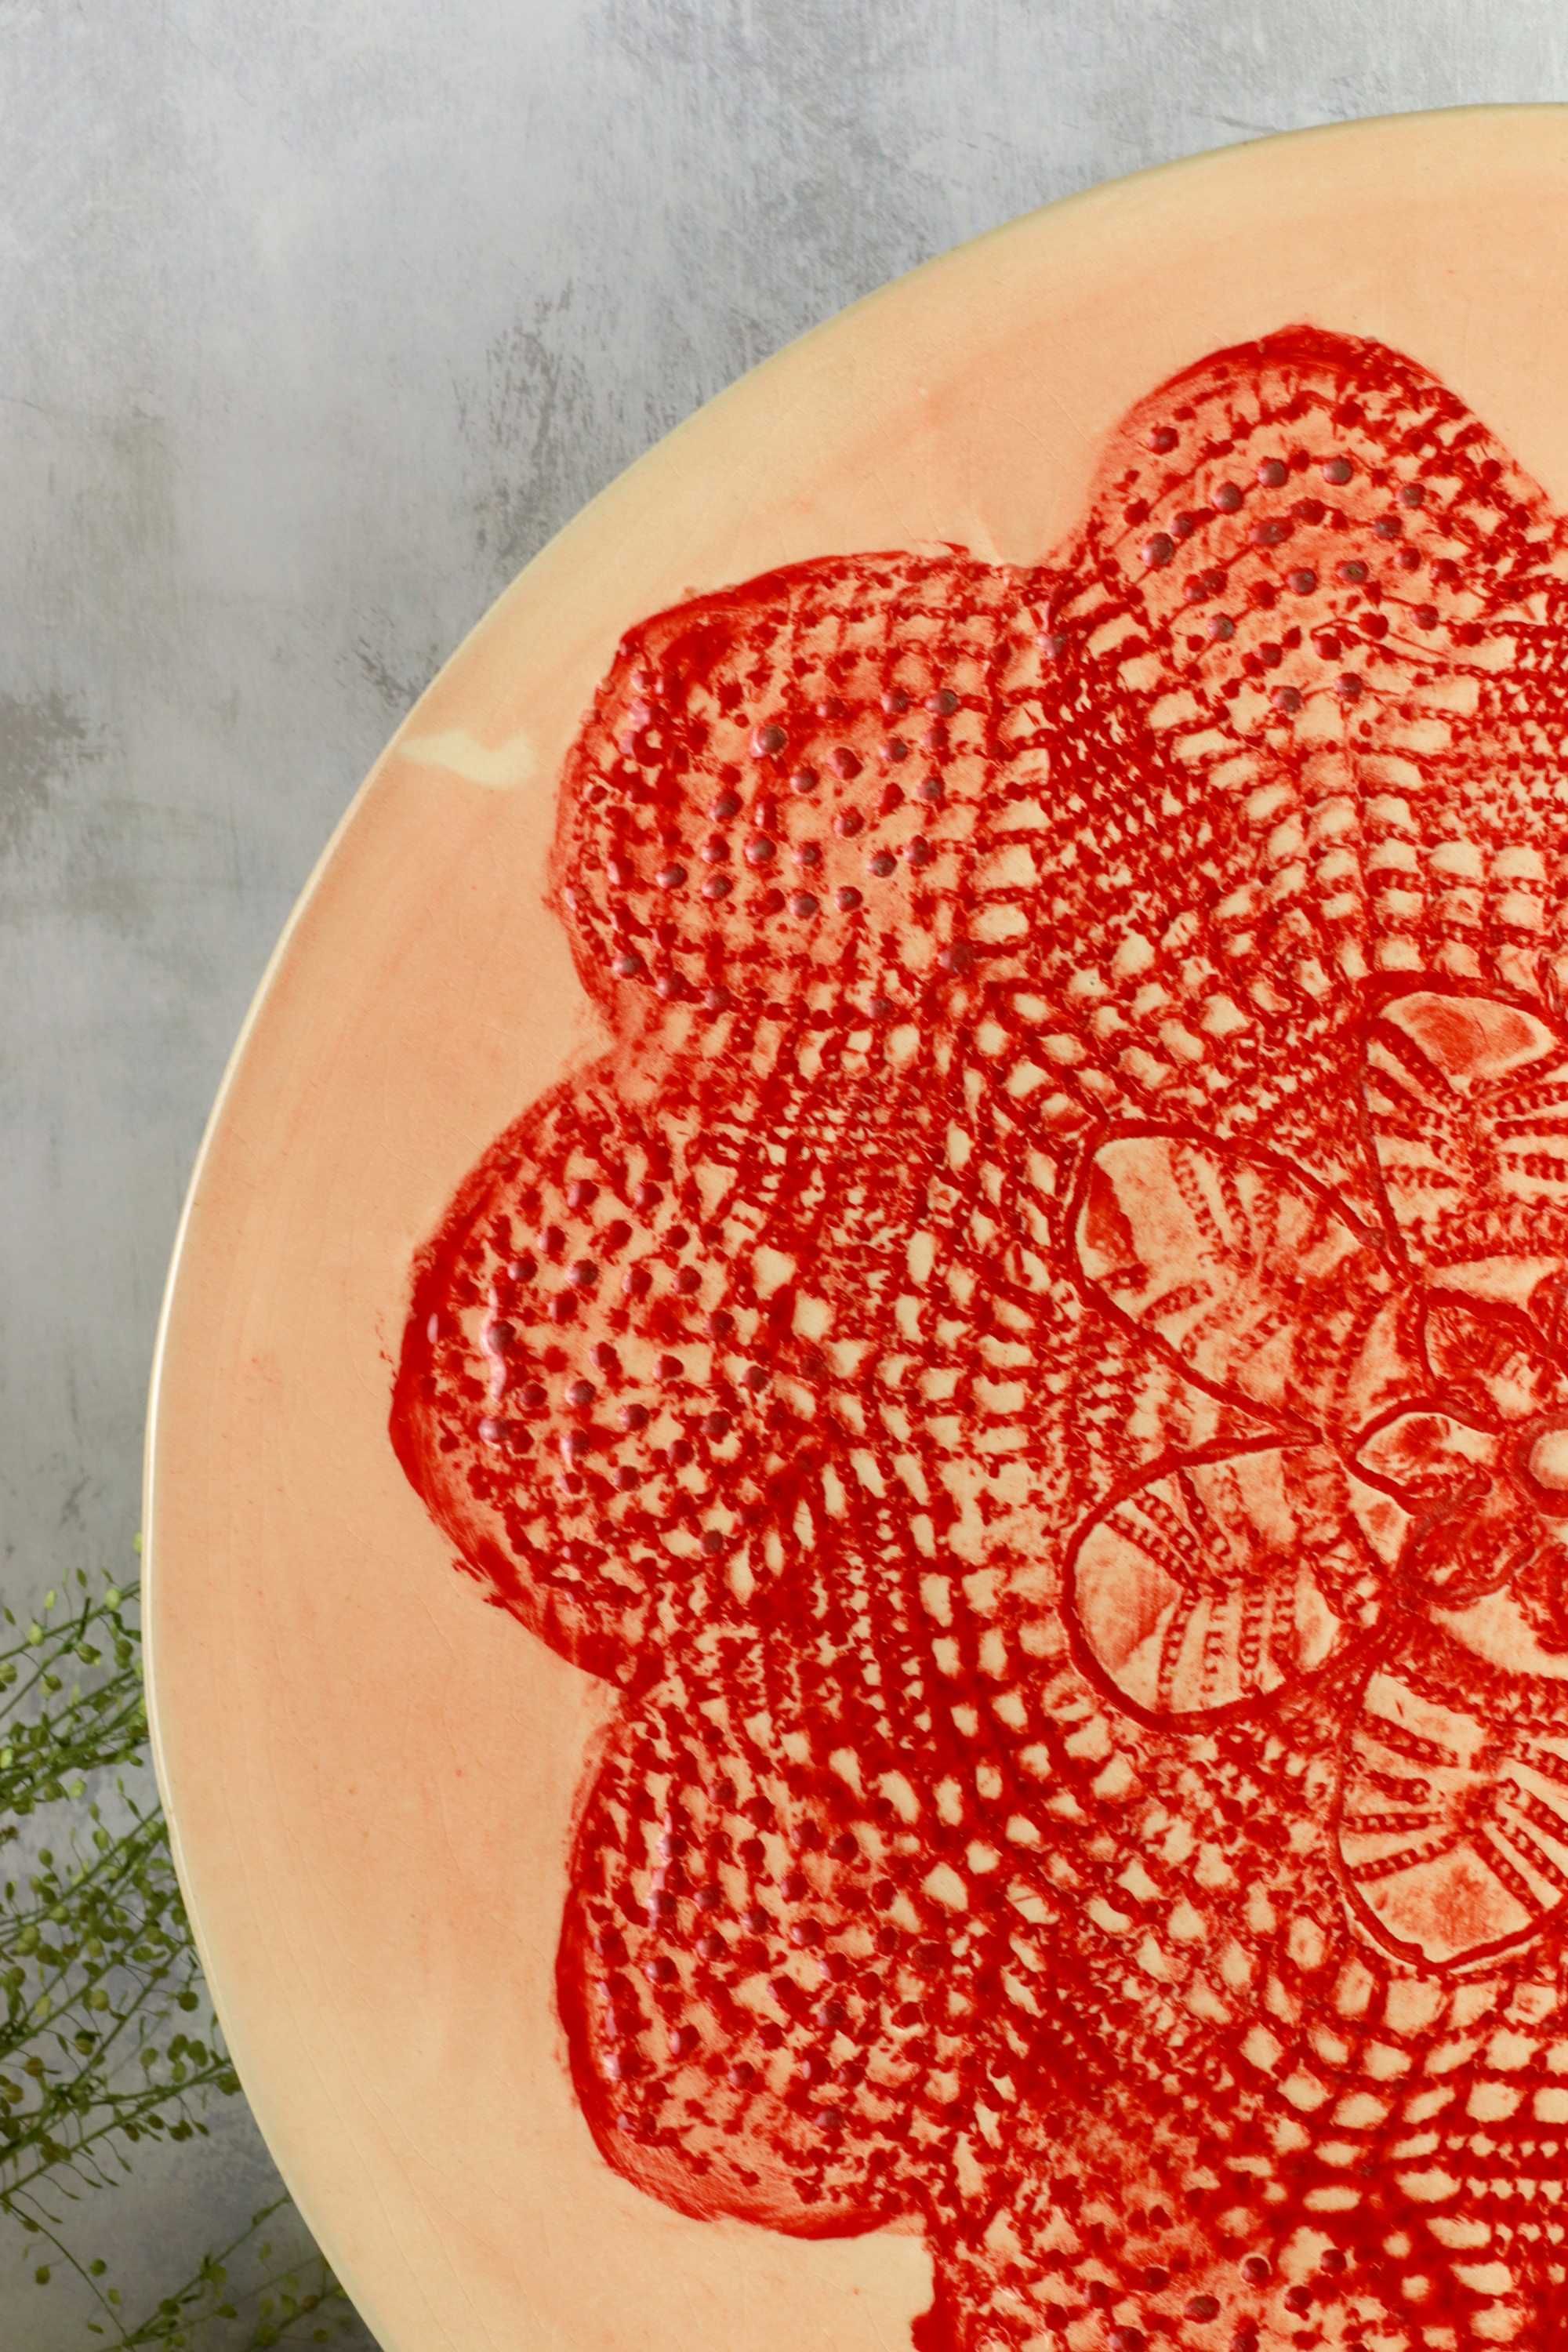 Ceramiczna patera z motywem kwiatu ceramika vintage